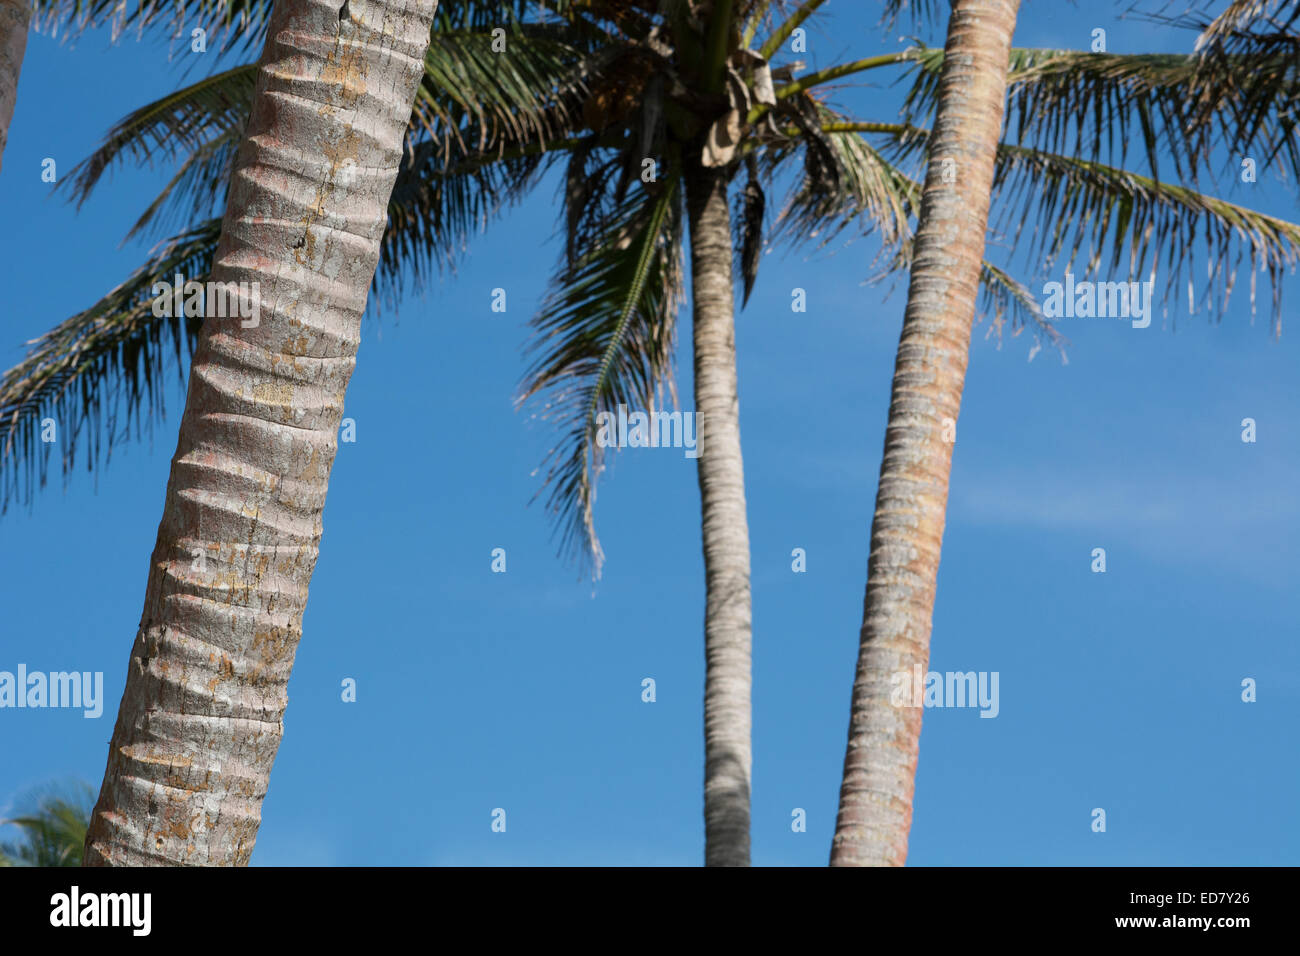 En Mélanésie, la Papouasie-Nouvelle-Guinée, de la mer de Bismarck, l'île de Tuam. Détail de palm tree trunks avec ciel bleu. Banque D'Images